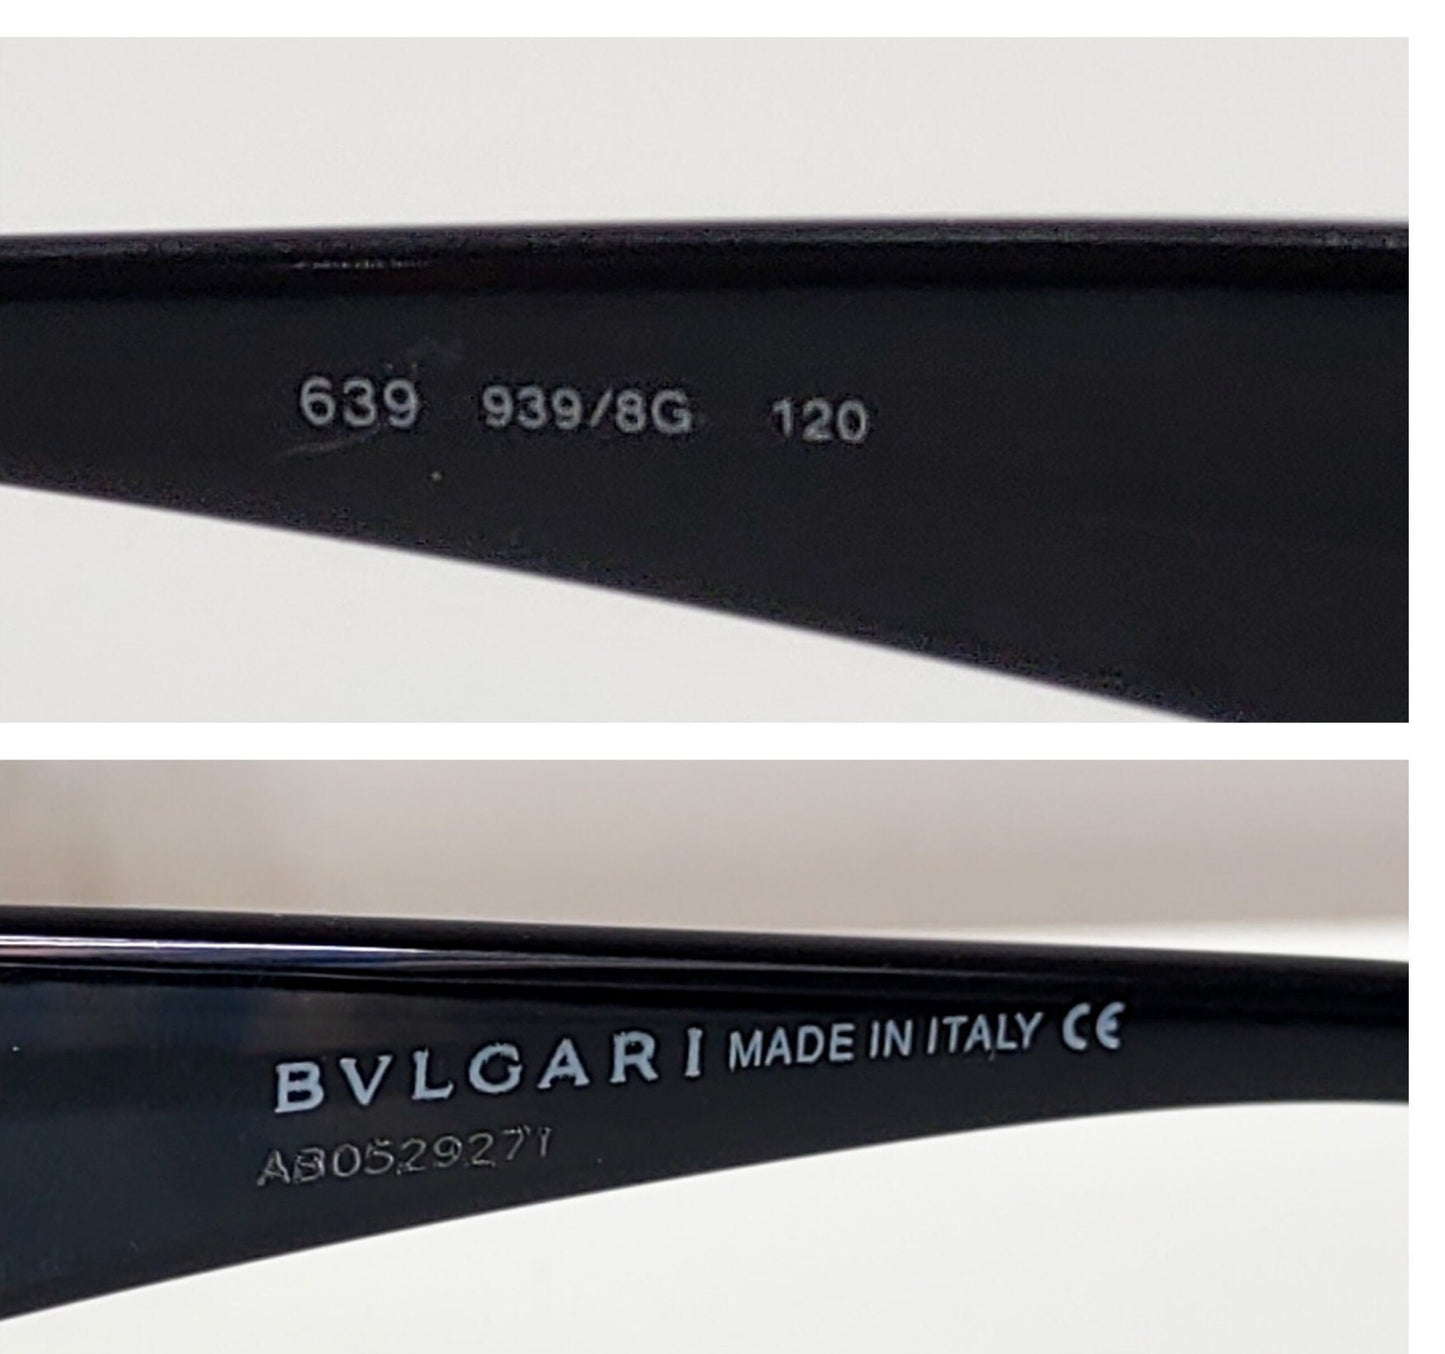 Occhiali da sole Bvlgari 639 wrap shield lunetta brille sfumature y2k